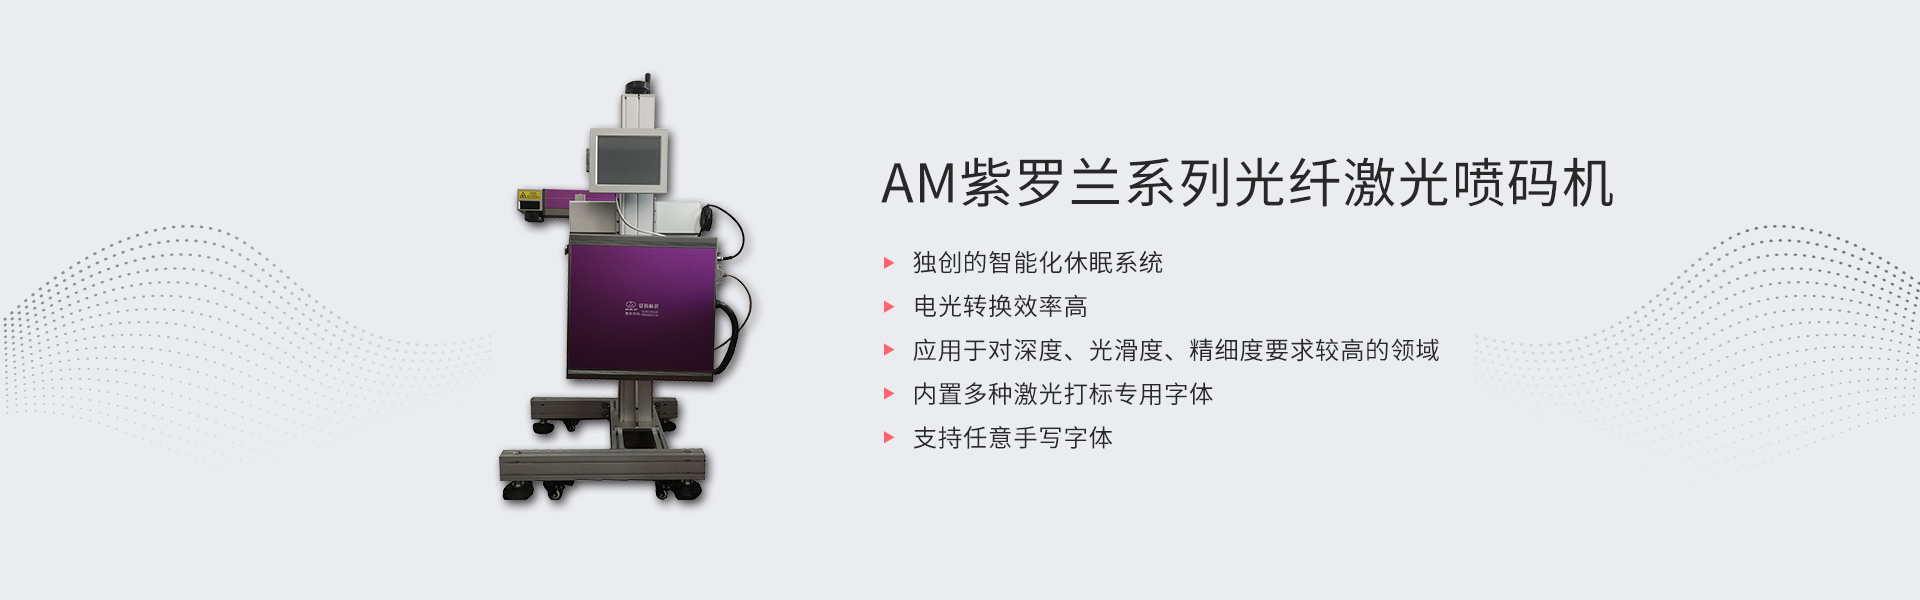 AM紫罗兰系列光纤激光喷码机(图1)